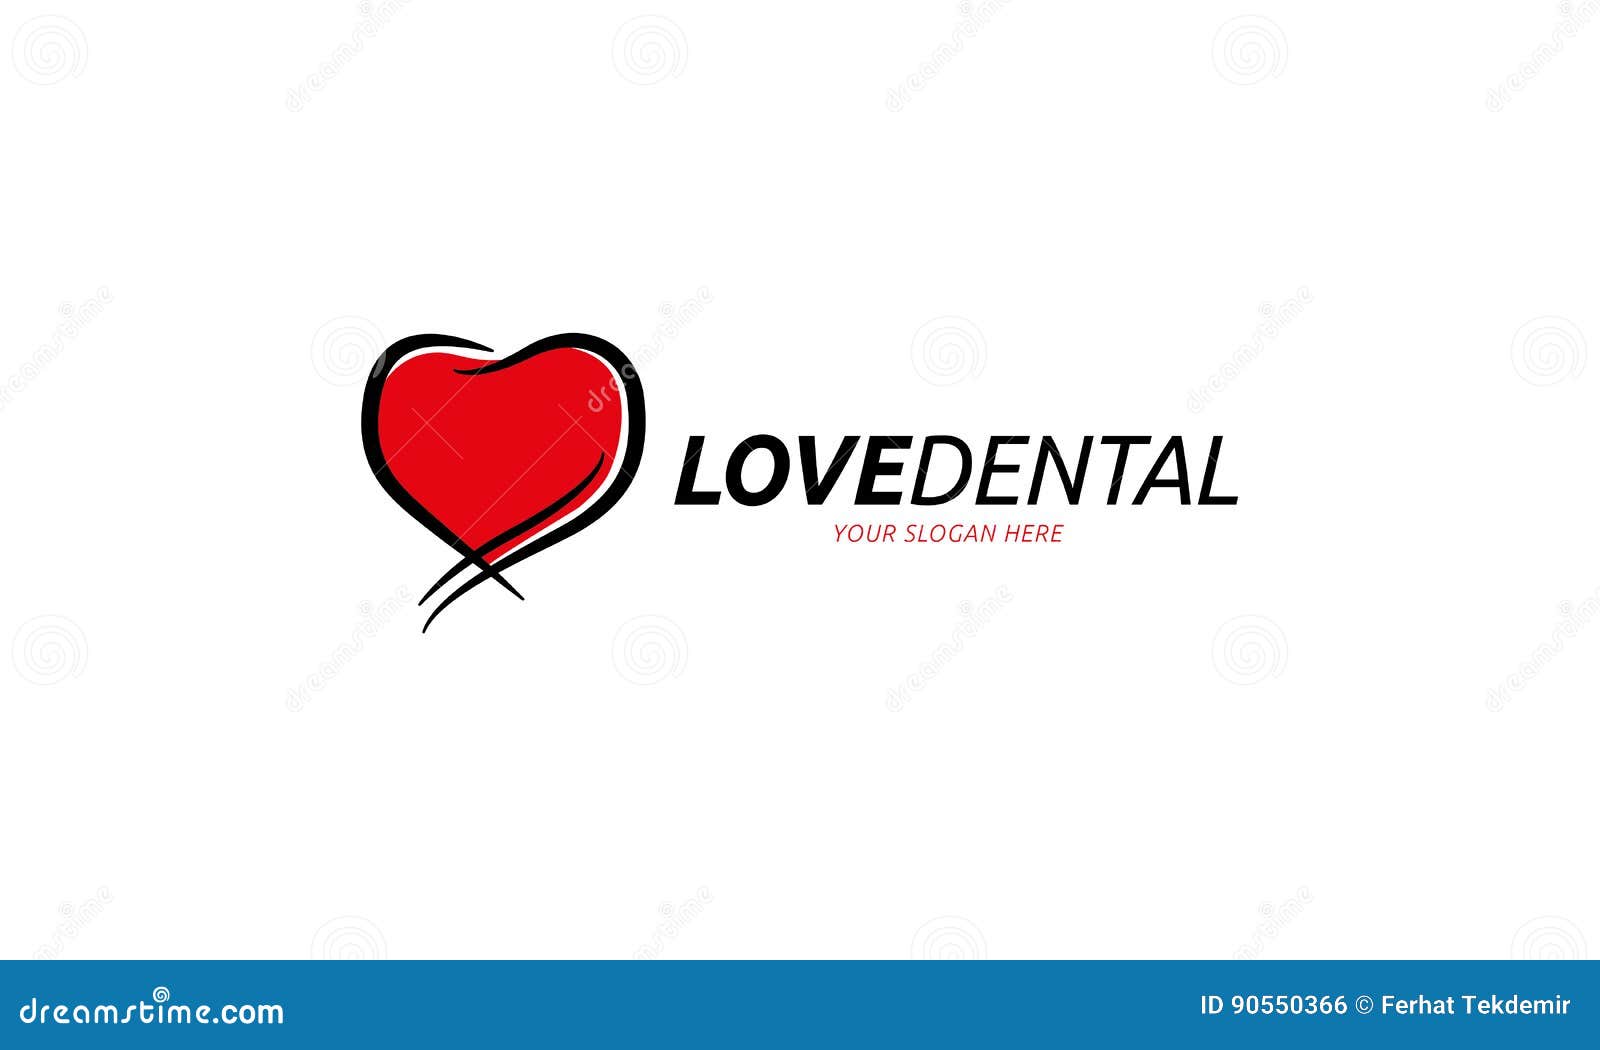 Free Free Love Dental Svg 634 SVG PNG EPS DXF File